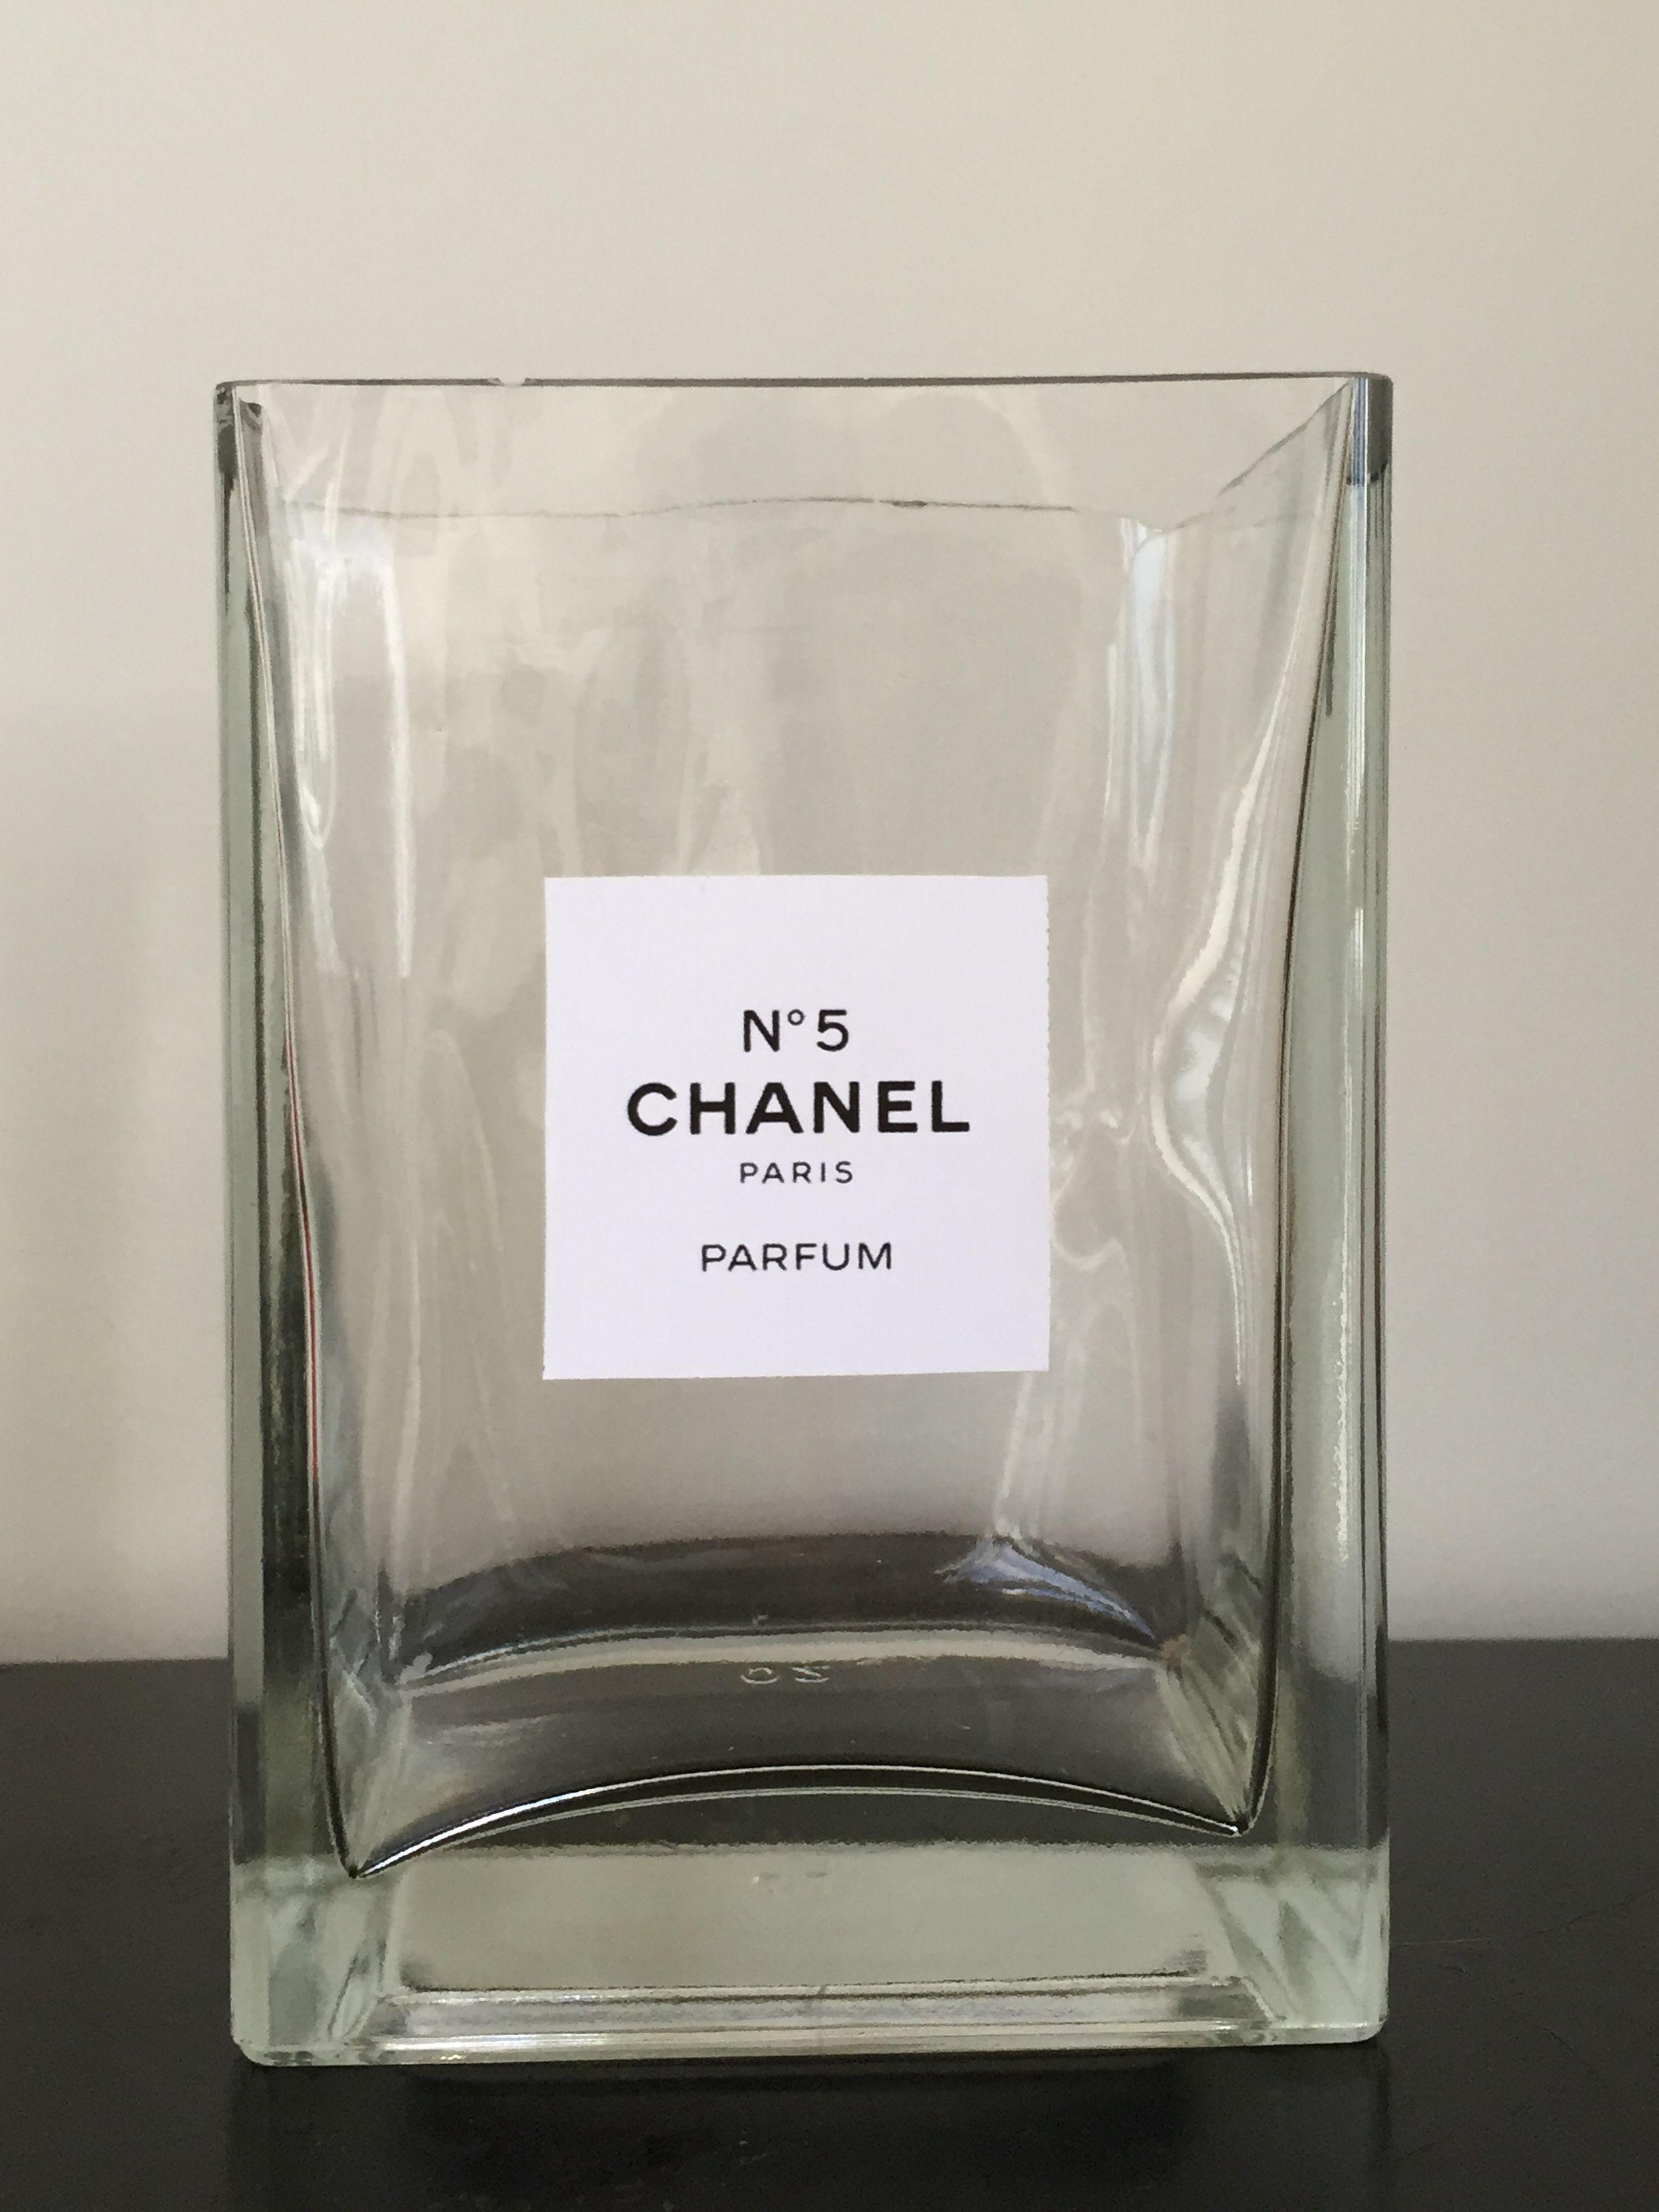 Chanel No. 5 Logo - Chanel no 5 Logos